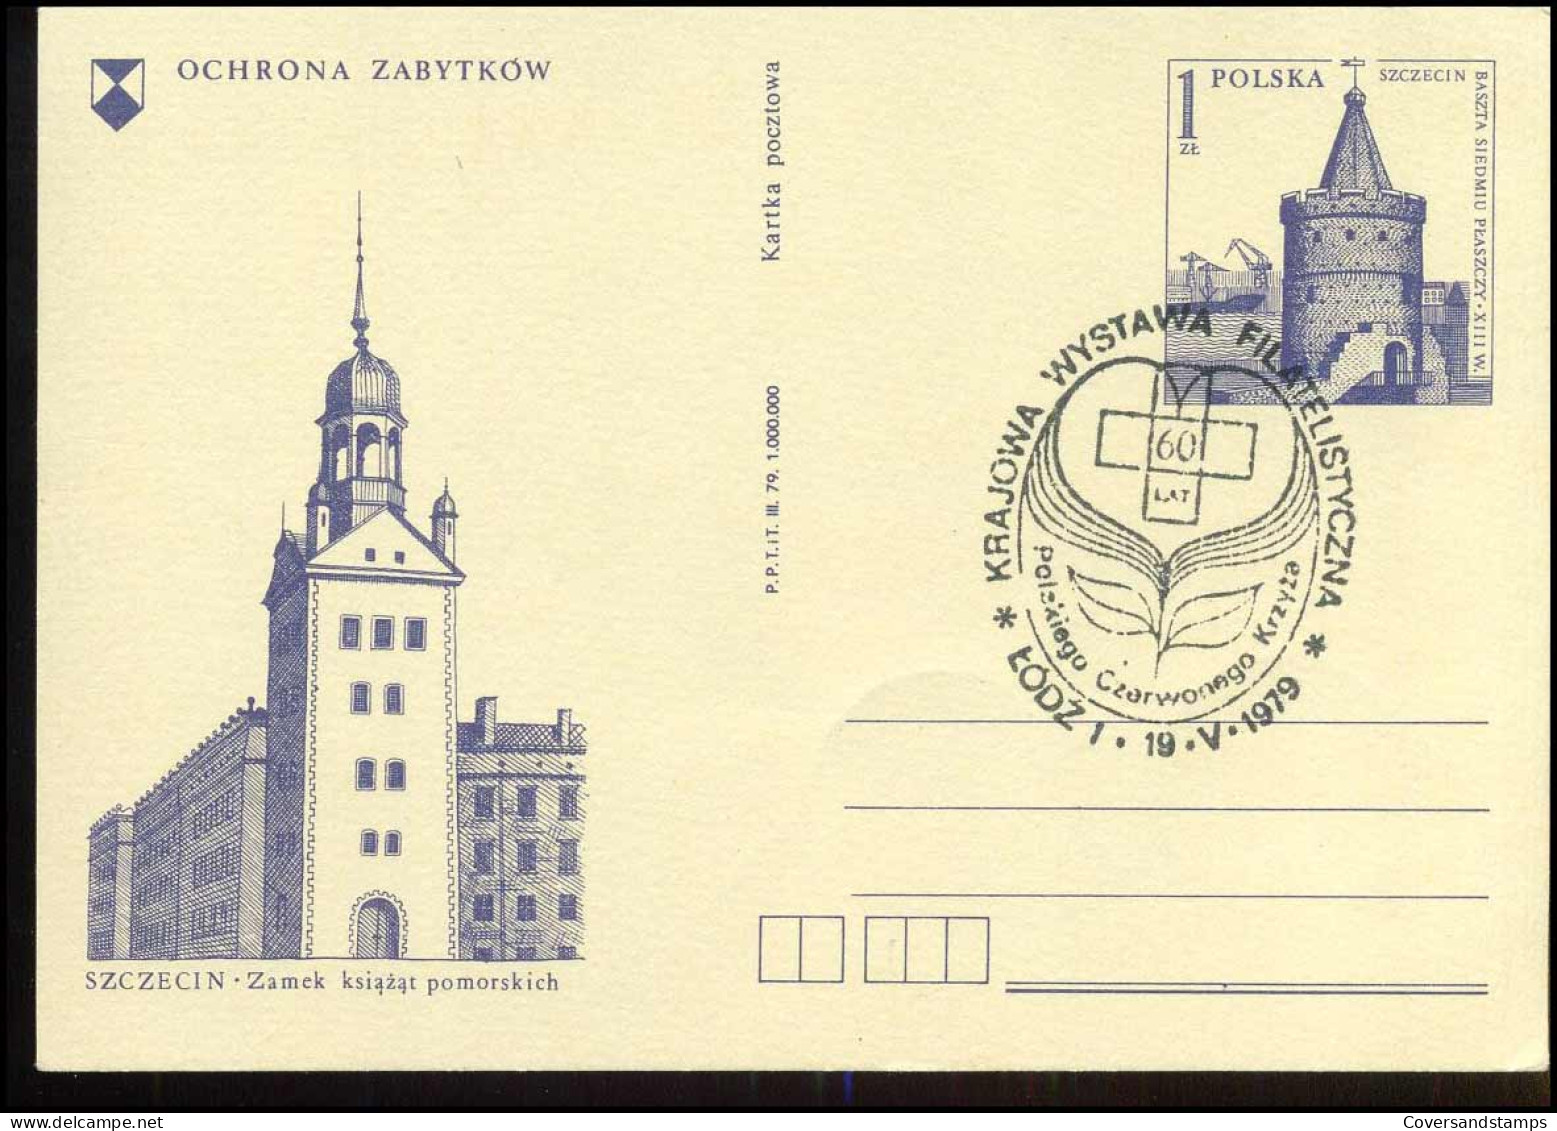 Post Card - Ochrona Zabytkow - Entiers Postaux